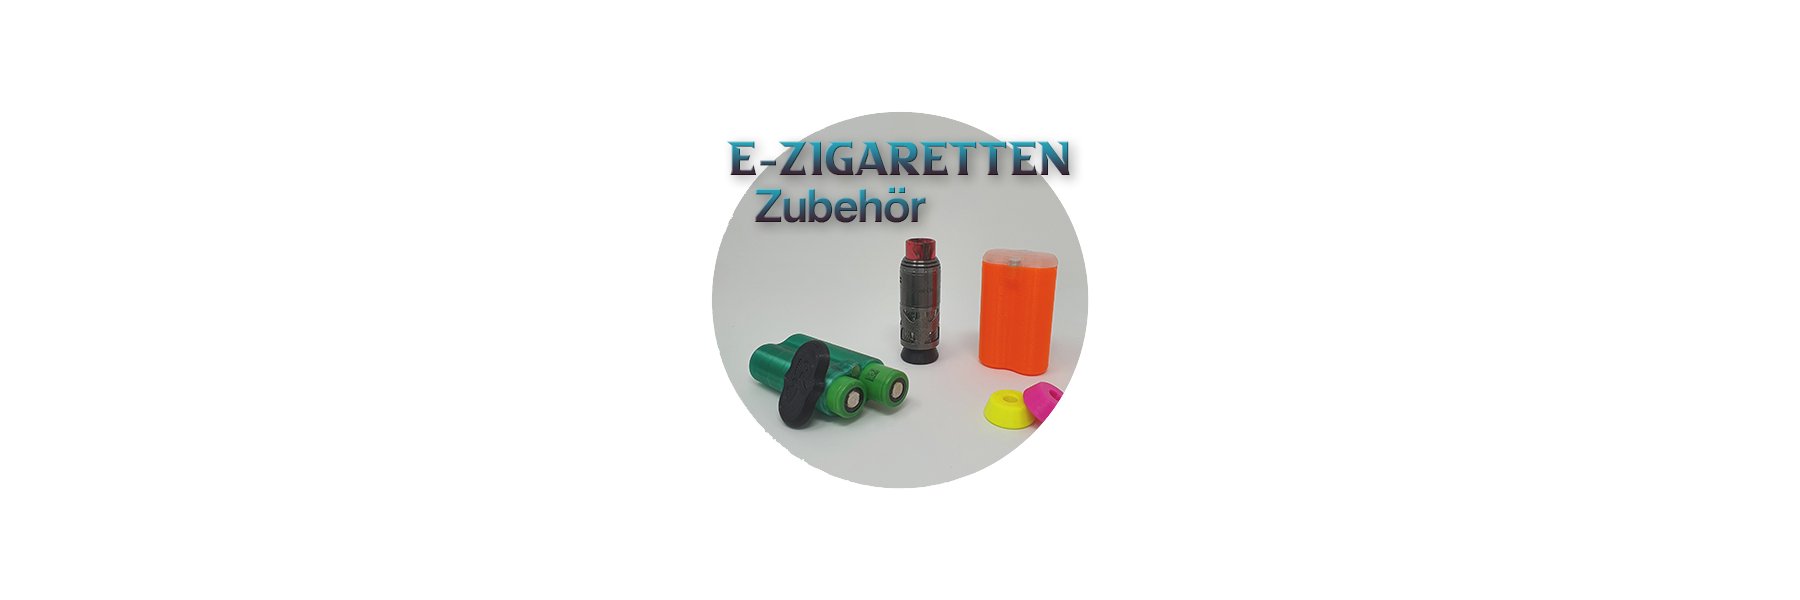 https://epicware.de/media/image/category/1/lg/e-zigeretten-zubehoer.jpg